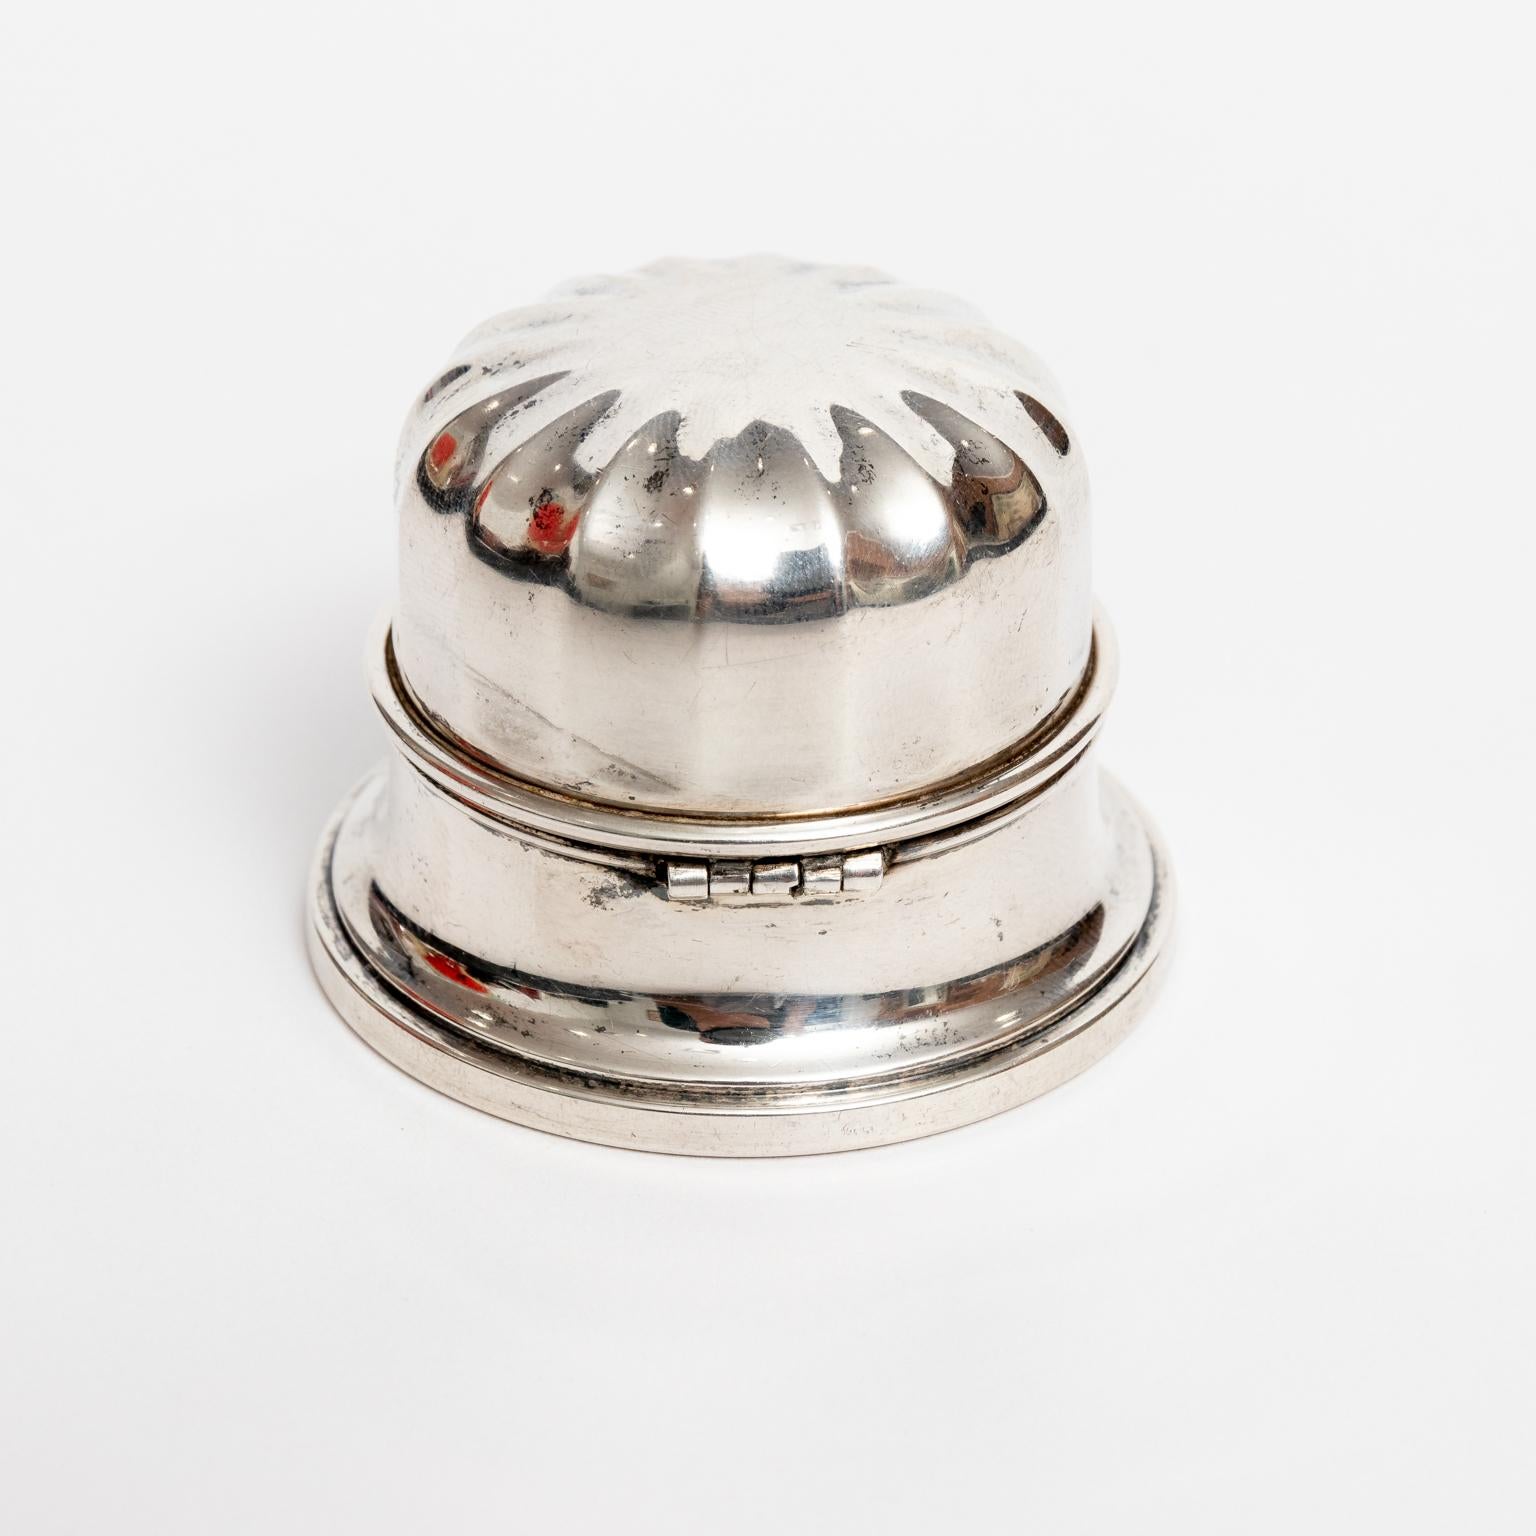 birks sterling silver ring box